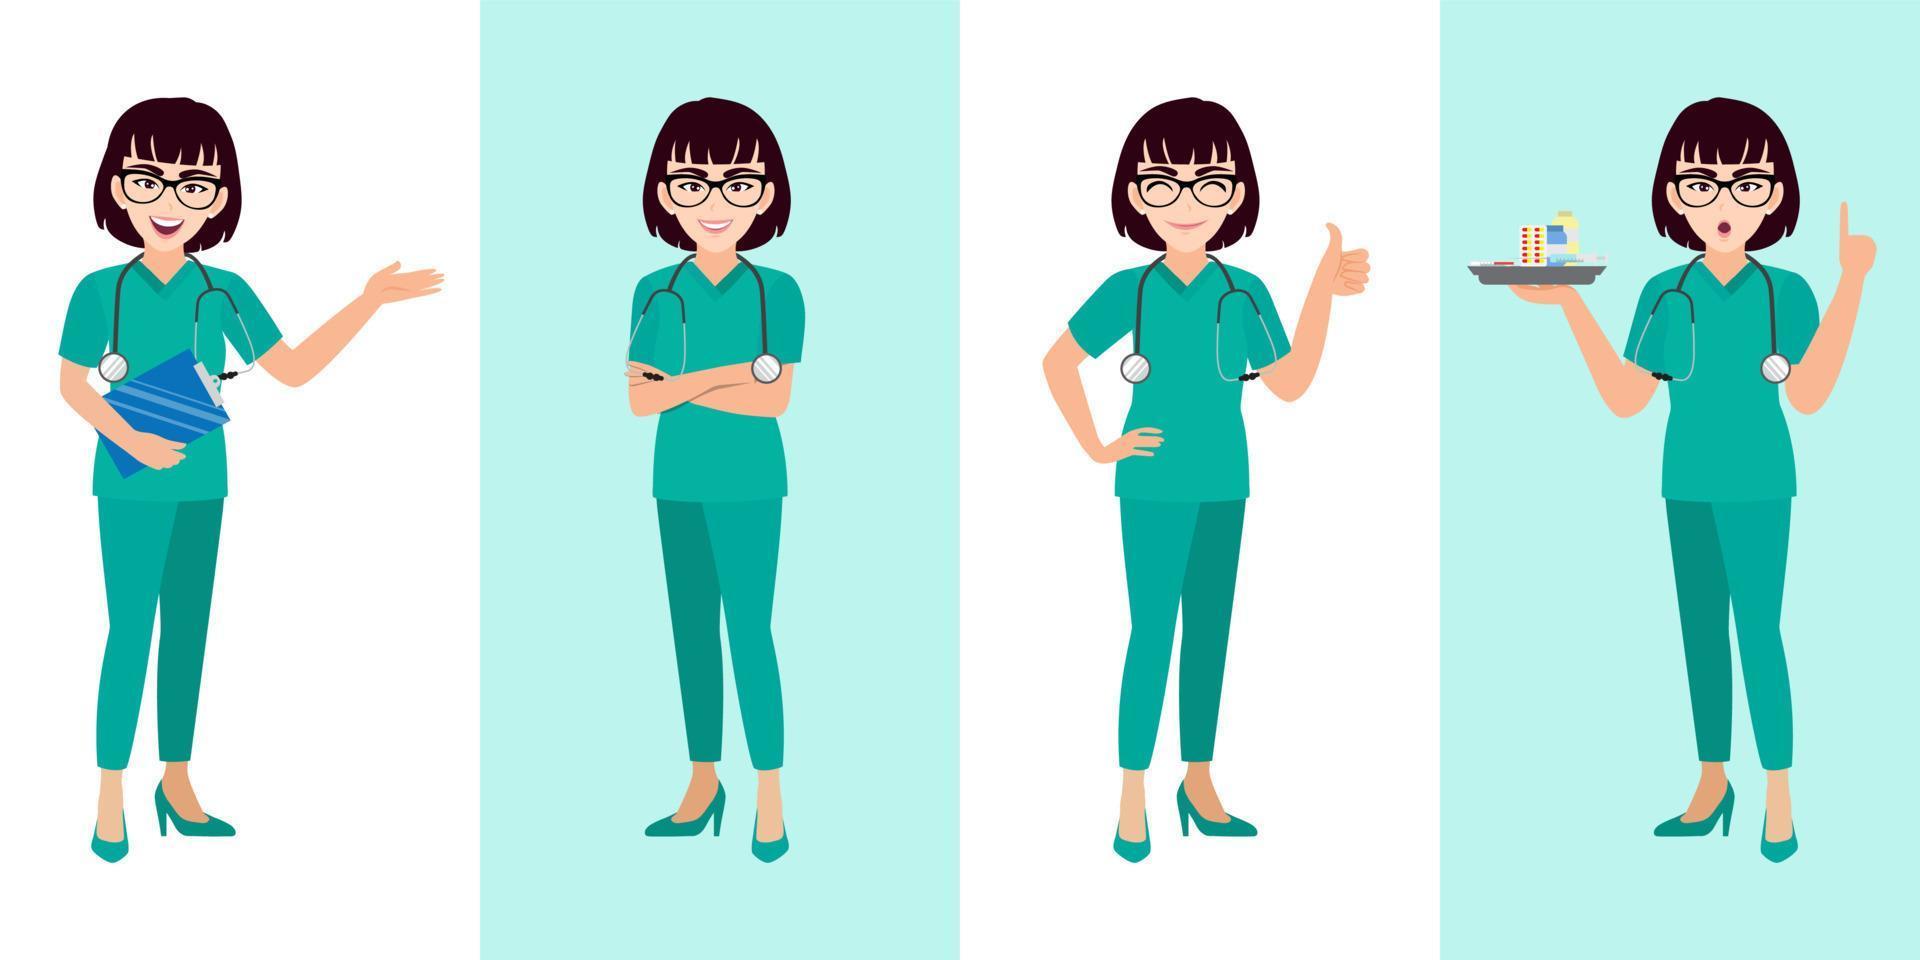 vrouwelijke arts cartoon tekenset, jonge of tiener dame arts in verschillende poses, medisch werker of ziekenhuispersoneel. dokter cartoon plat pictogram op een witte en groene achtergrond vector